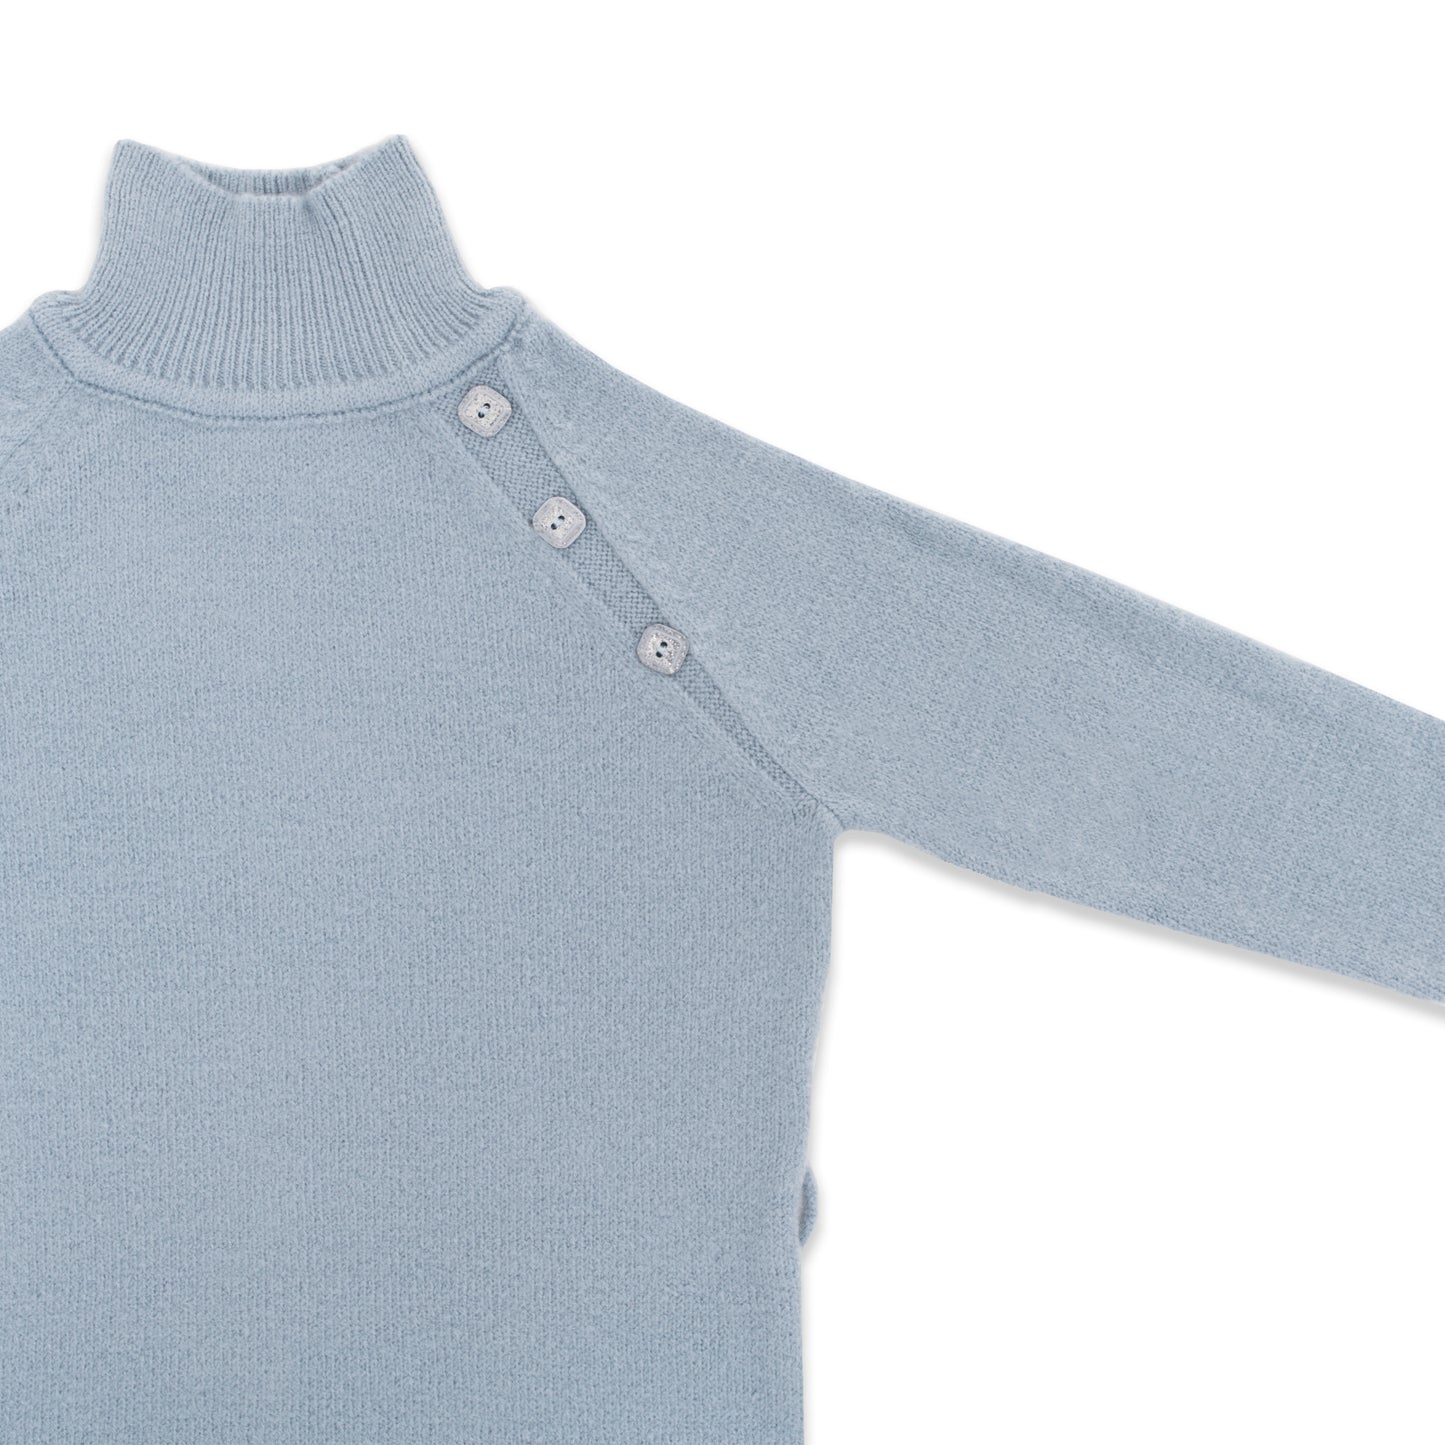 Button Detailed Half Turtleneck Sweater